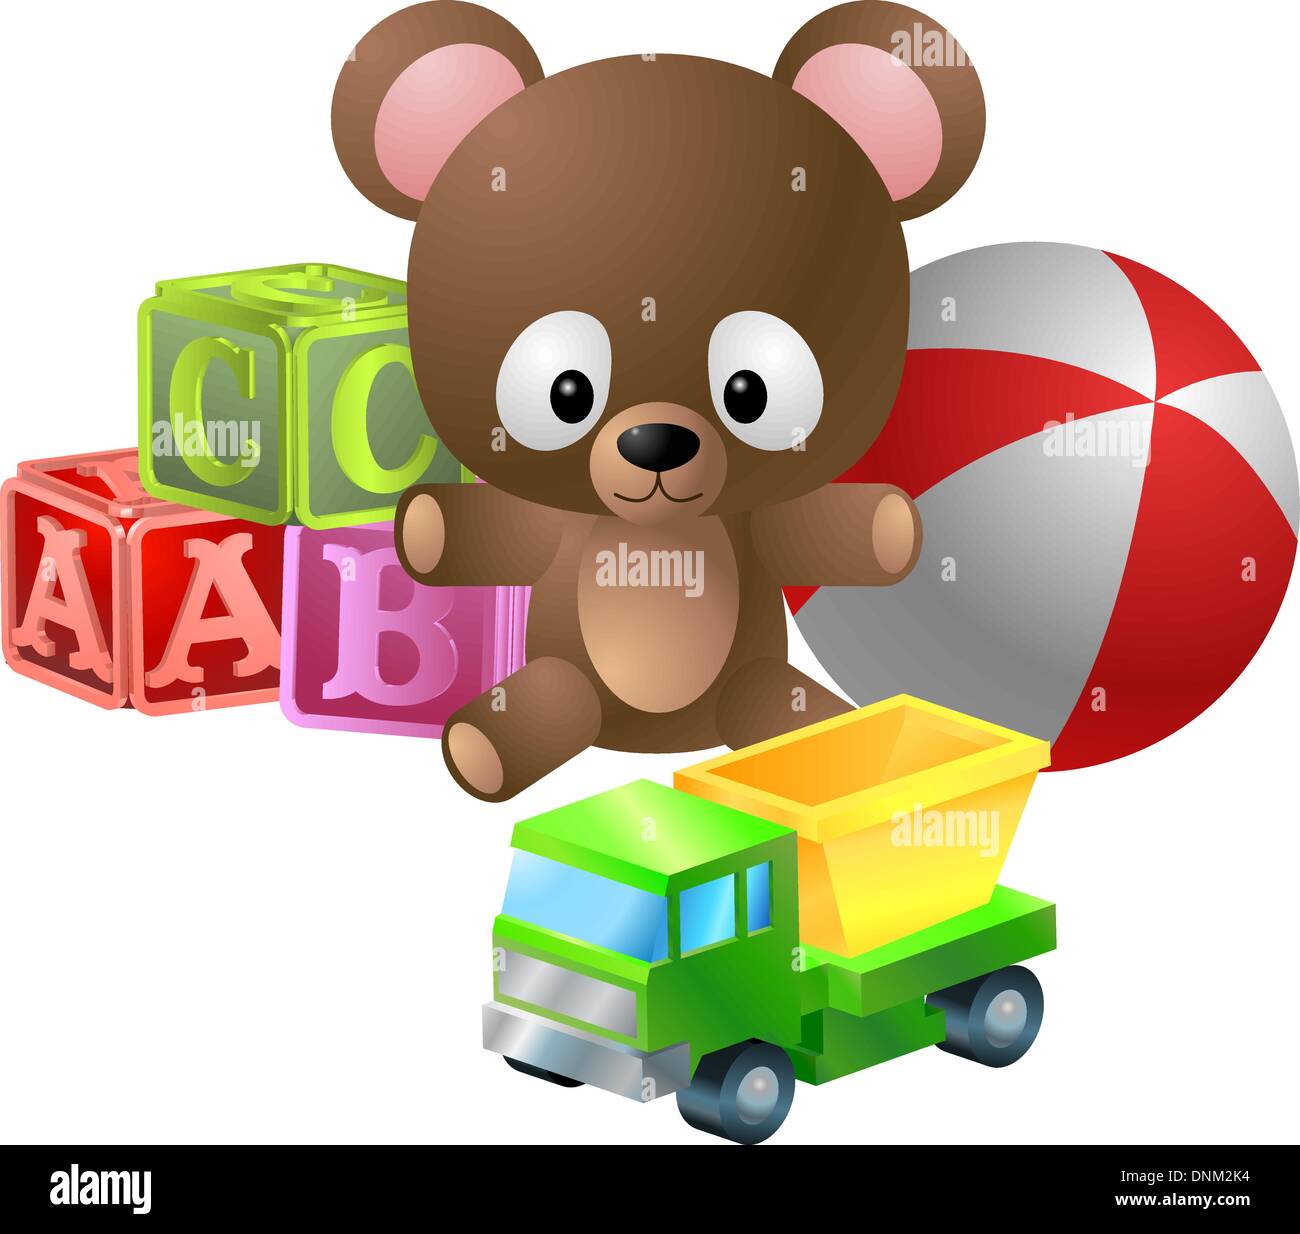 Zur Veranschaulichung der klassischen Kinderspielzeug; Bär, Alphabet Blöcke, Ball und Spielzeug Kipper LKW Stock Vektor